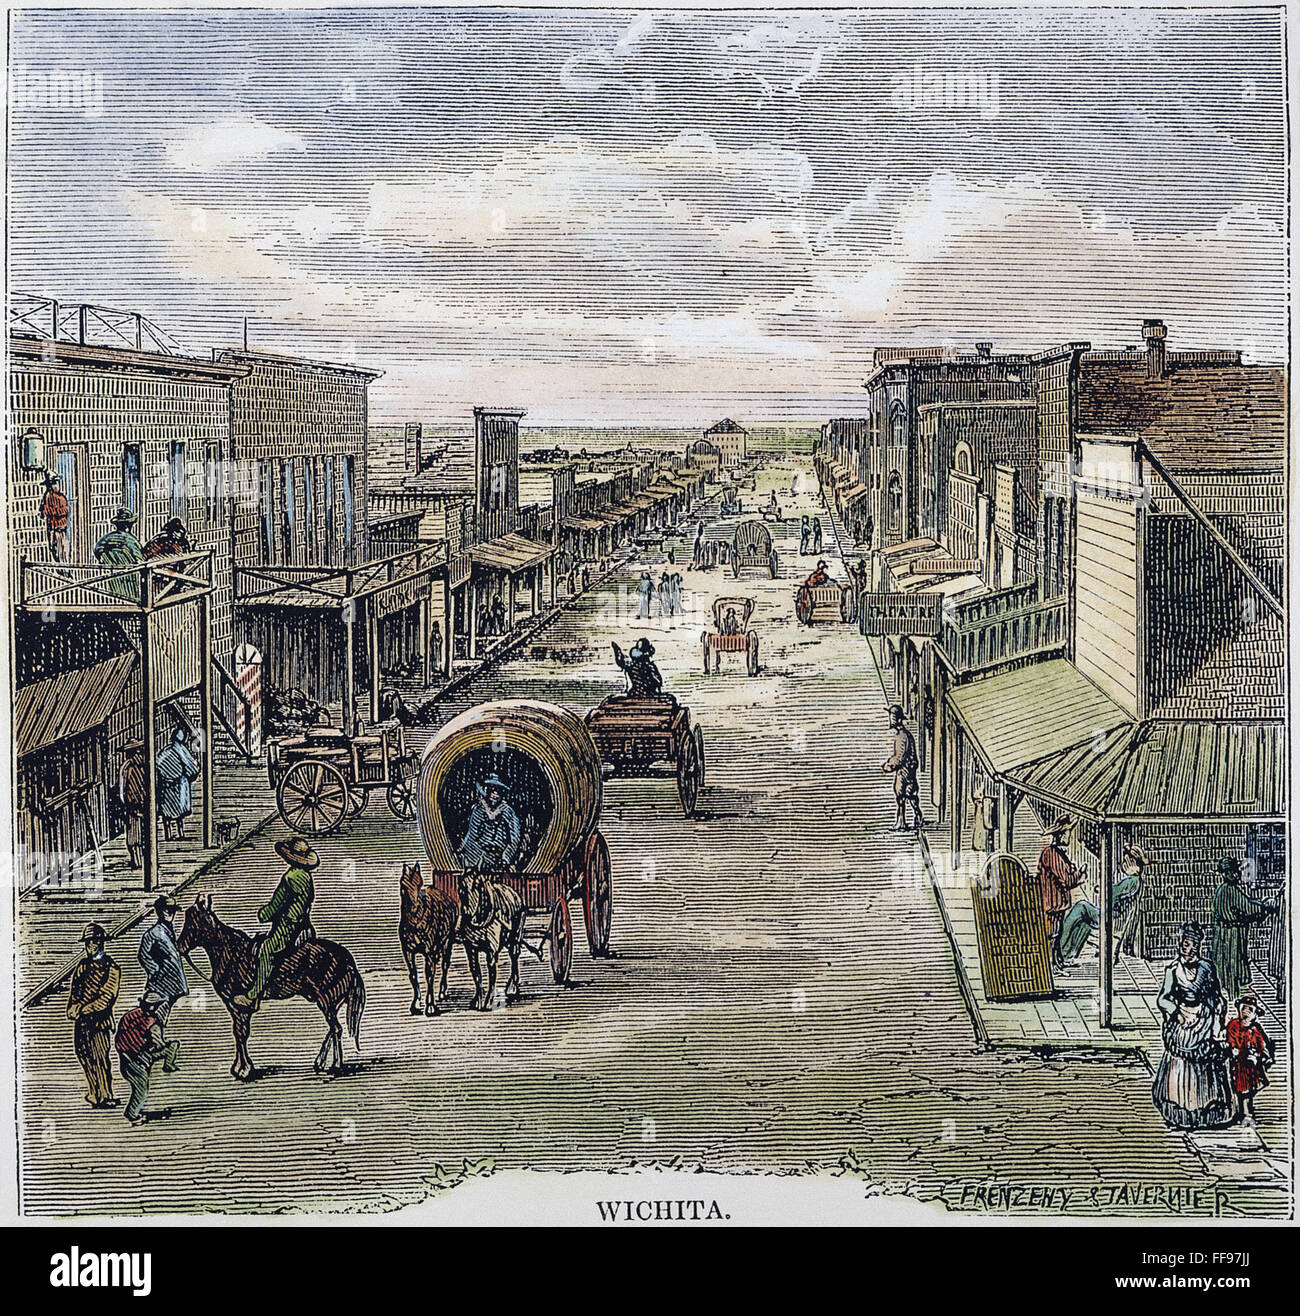 WICHITA, Kansas, 1874. /NWichita, Kansas en 1874, six ans après la ville a été fondée sur la piste Chisholm. La gravure sur bois de l'Amérique contemporaine. Banque D'Images